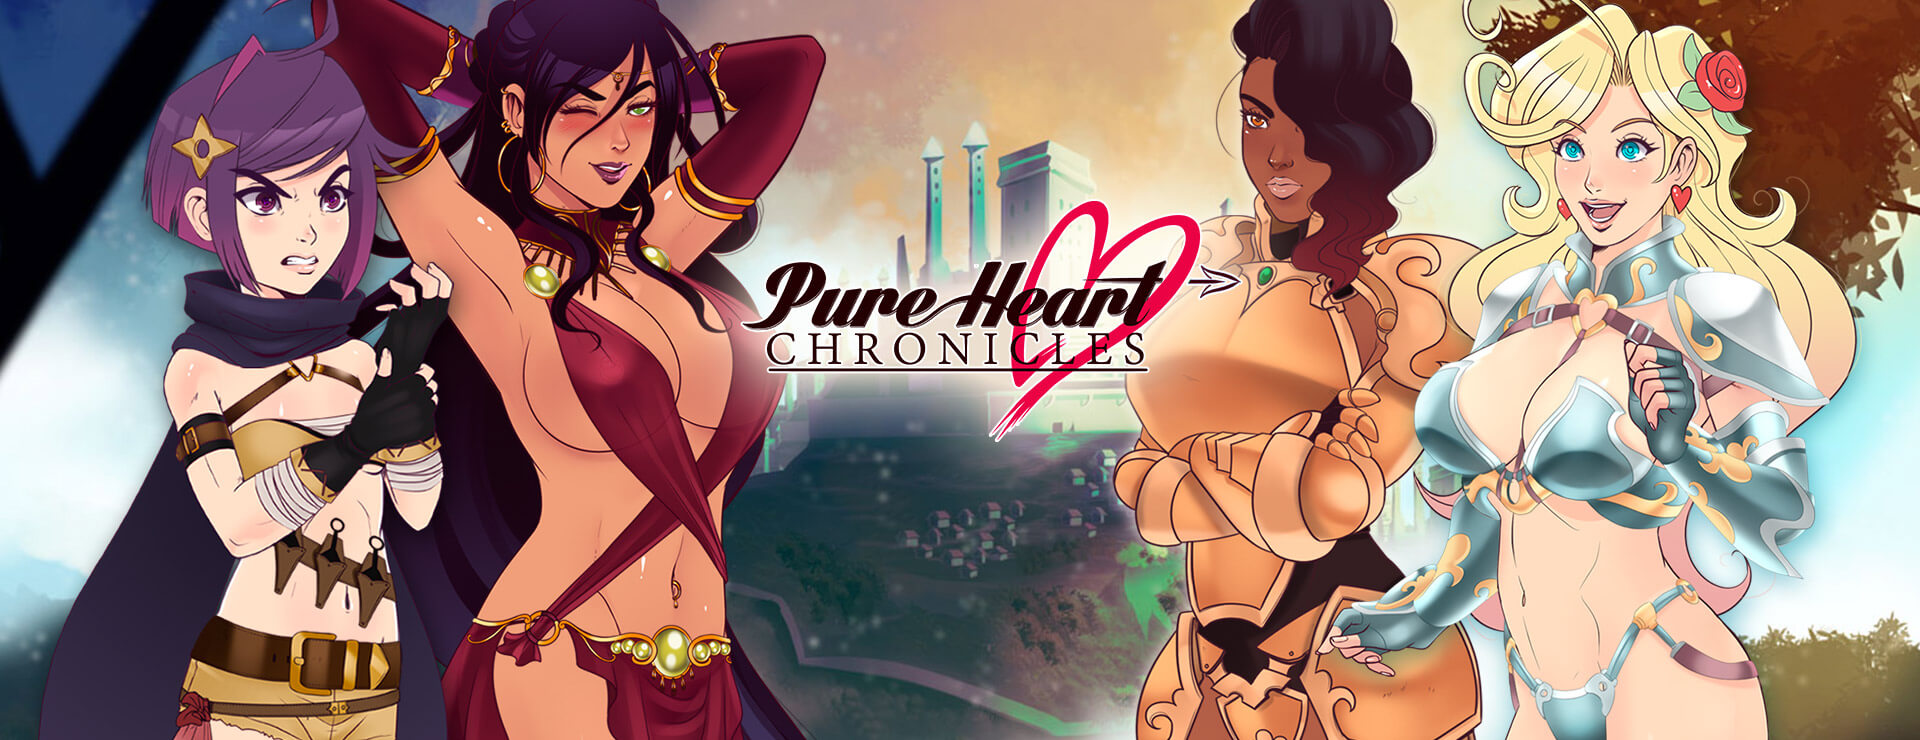 Pure Heart Chronicles - Powieść wizualna Gra